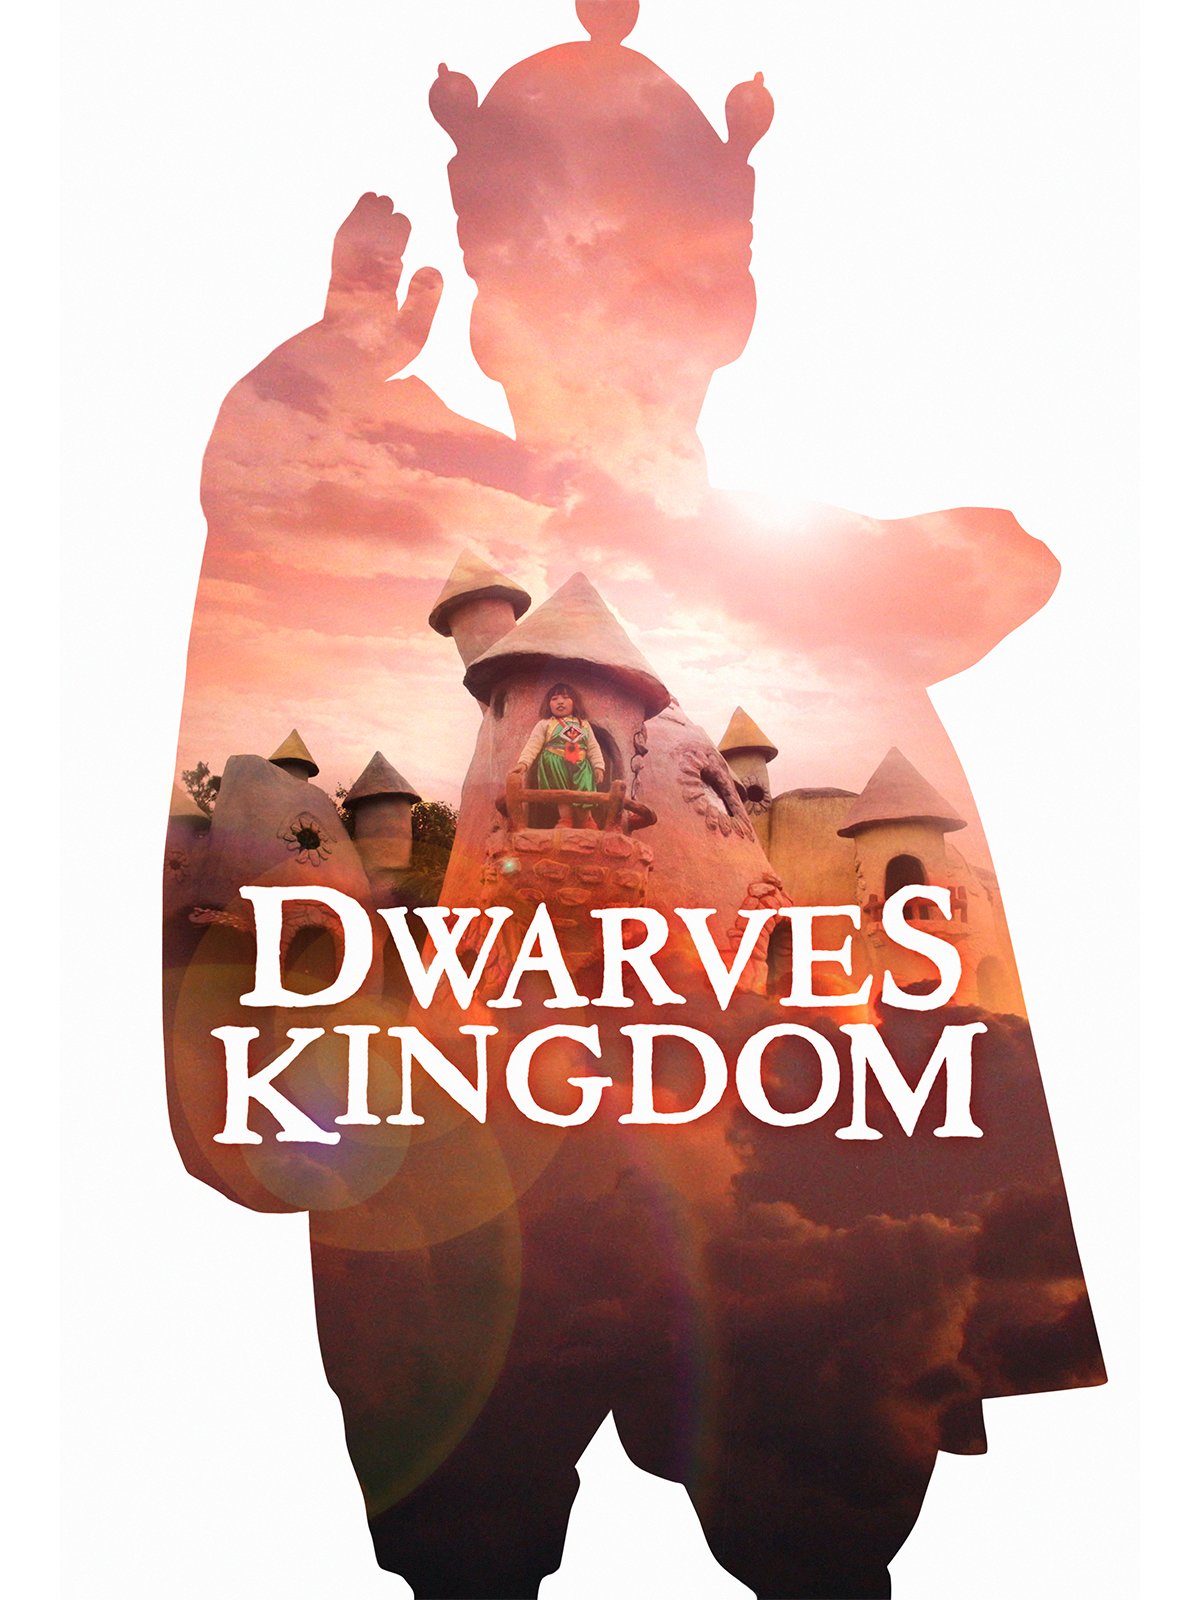 DWARVES KINGDOM /// MATTHEW SALTON